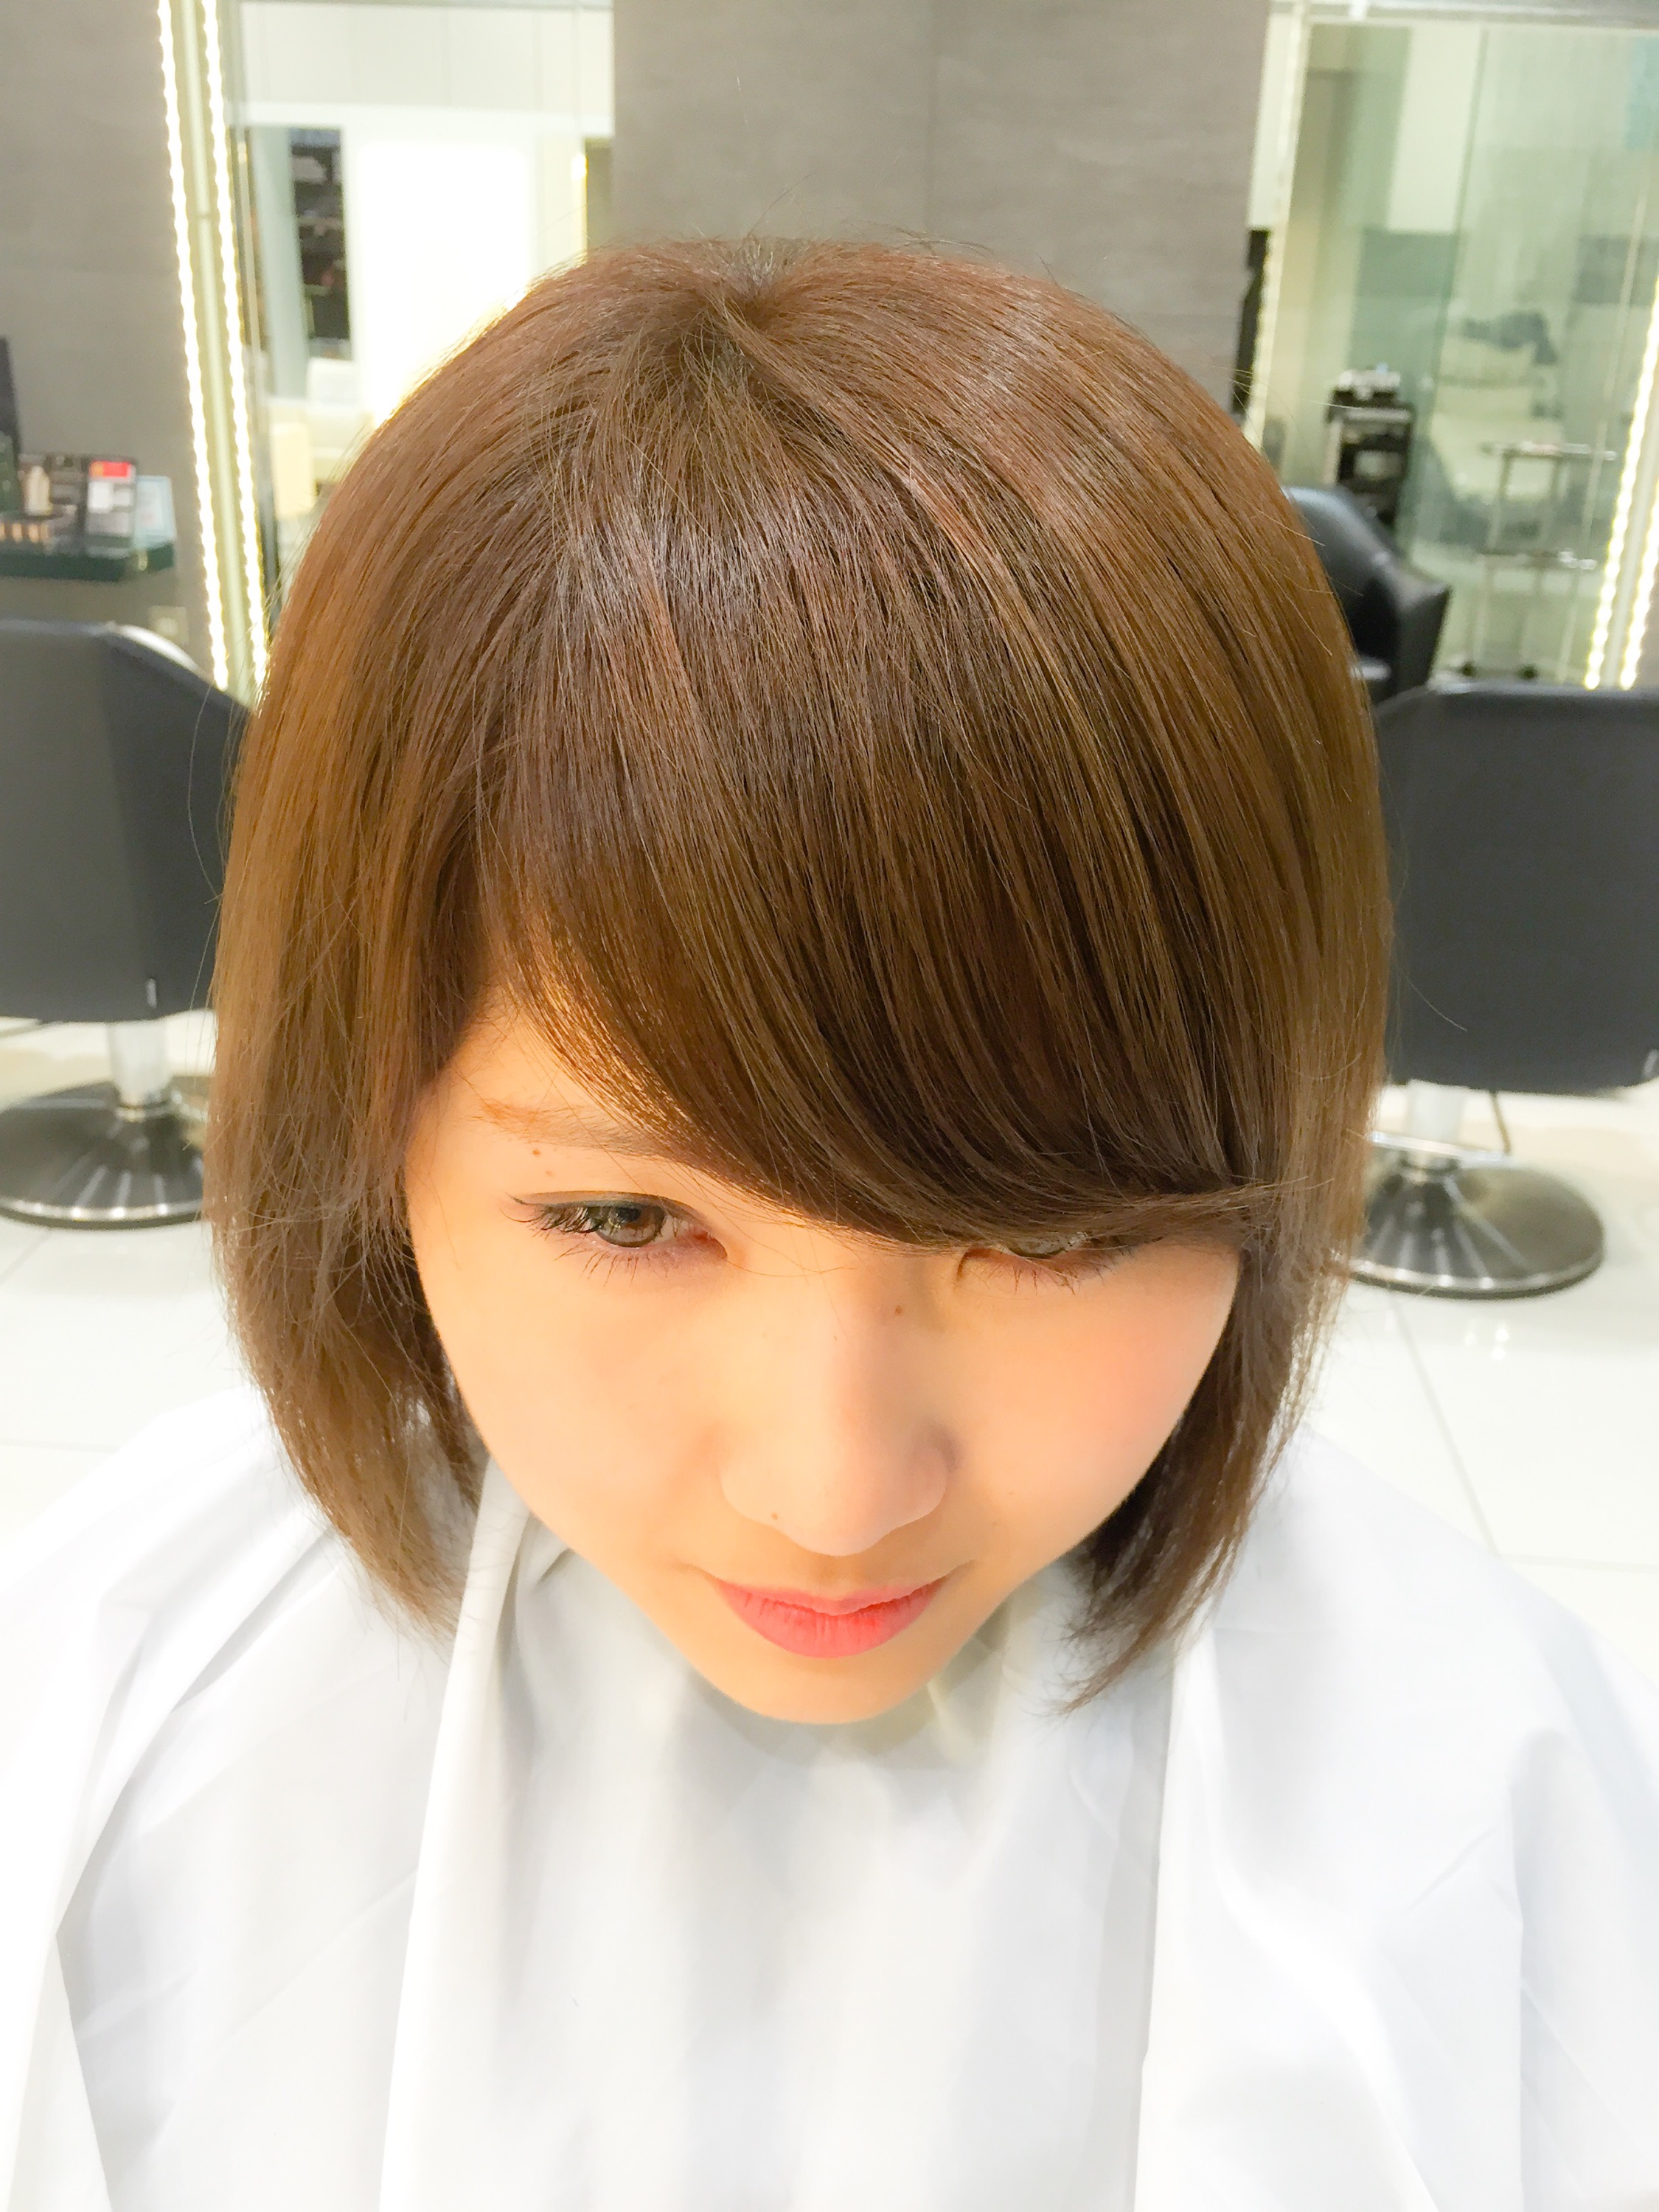 How To パックリ割れない前髪を作る たった2つの方法 Za Za Aoyama 美容院 美容室 ヘアサロンならza Za ザザ